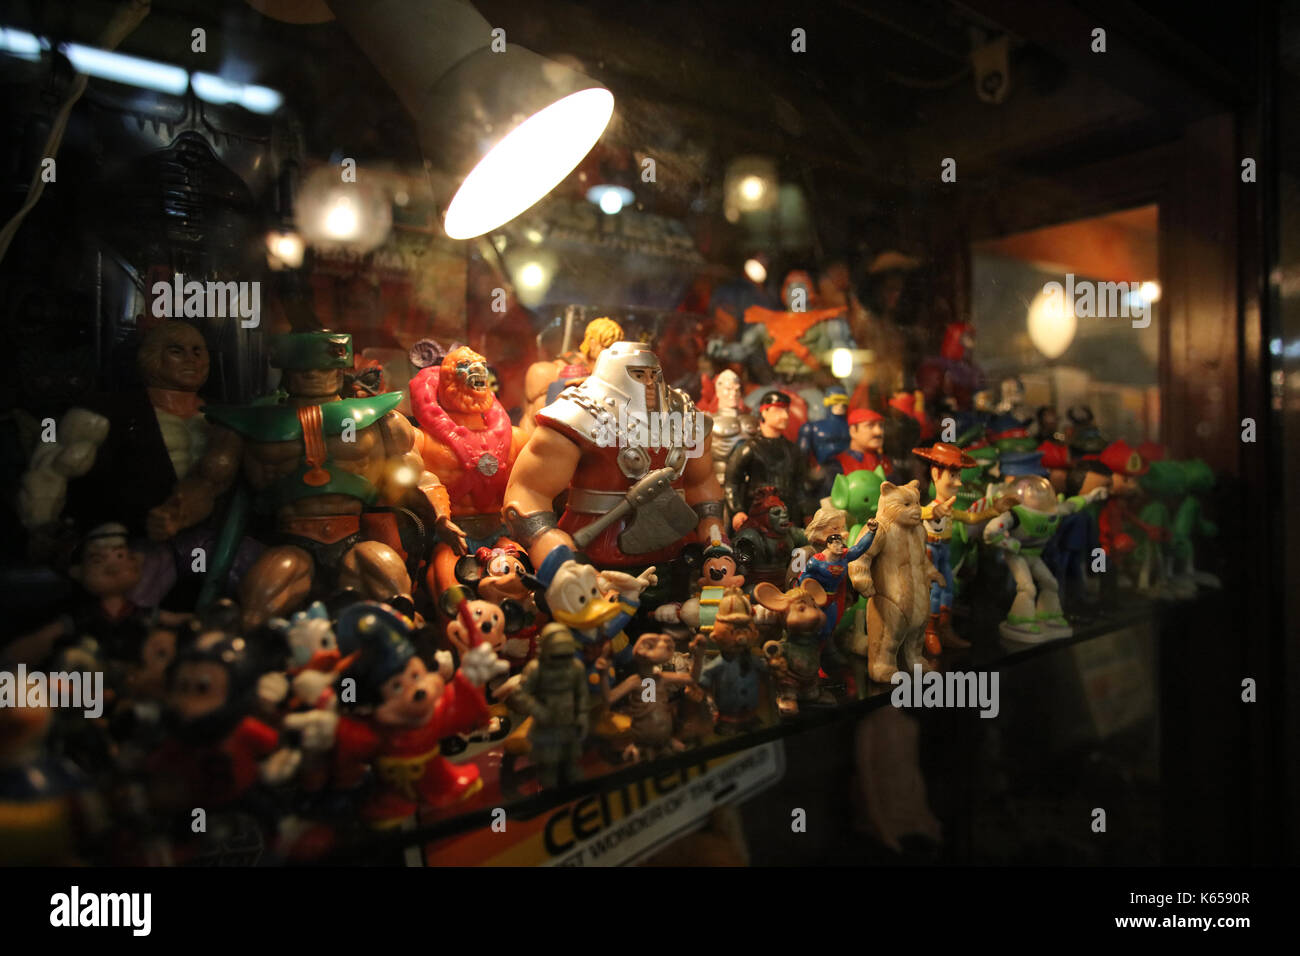 SAN TELMO, BUENOS AIRES, ARGENTINE - Septembre 2017 - Vieux jouets à partir d'un marché aux puces dans un endroit appelé San Telmo à Buenos Aires. Banque D'Images